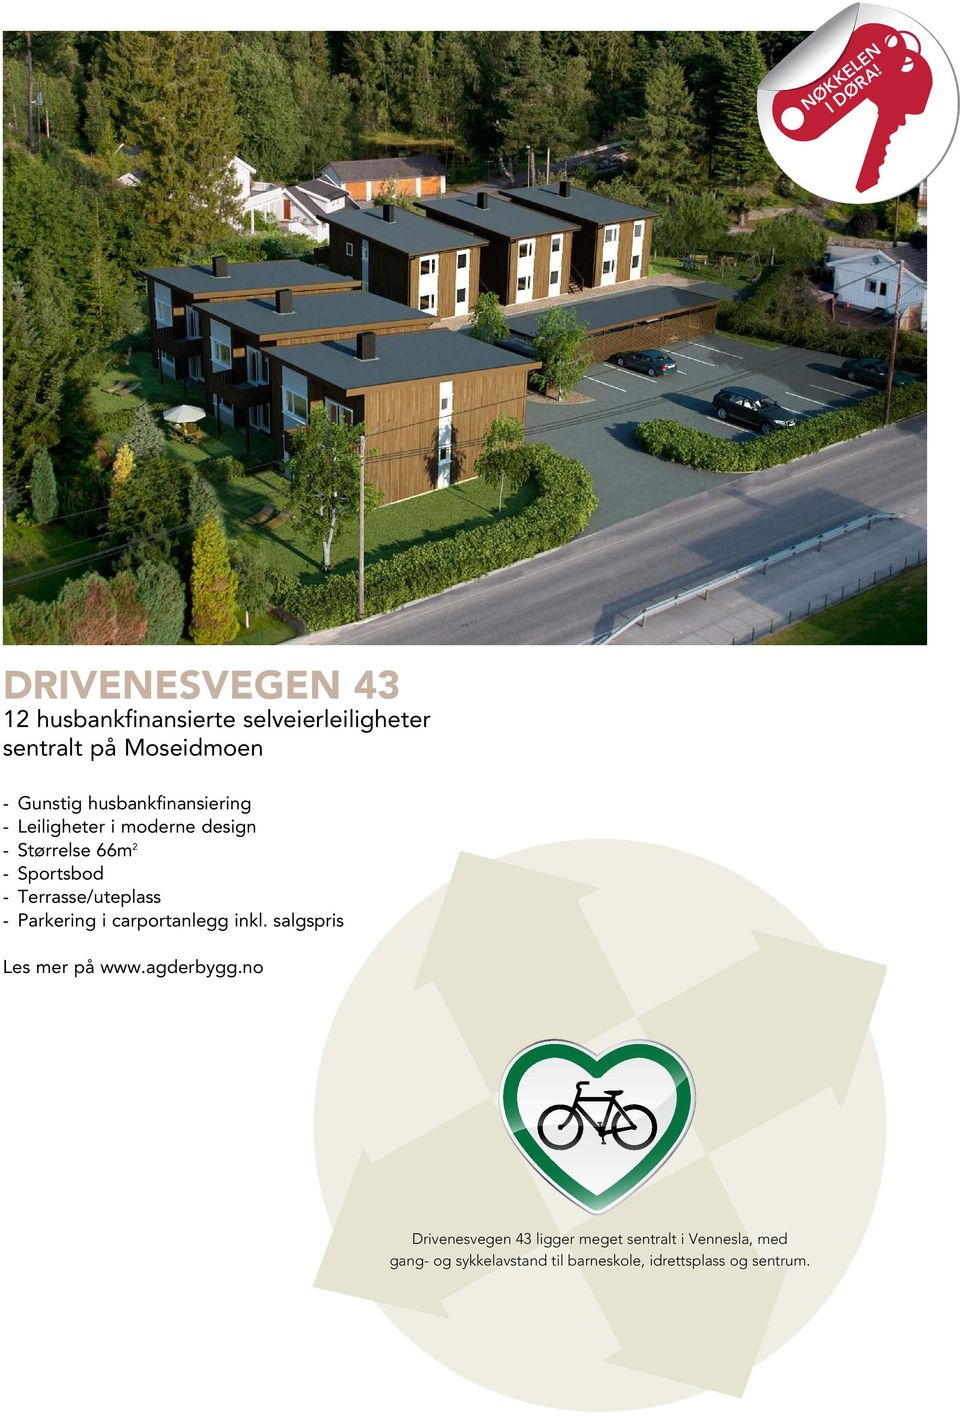 husbankfinansiering - Leiligheter i moderne design - Størrelse 66m 2 - Sportsbod -